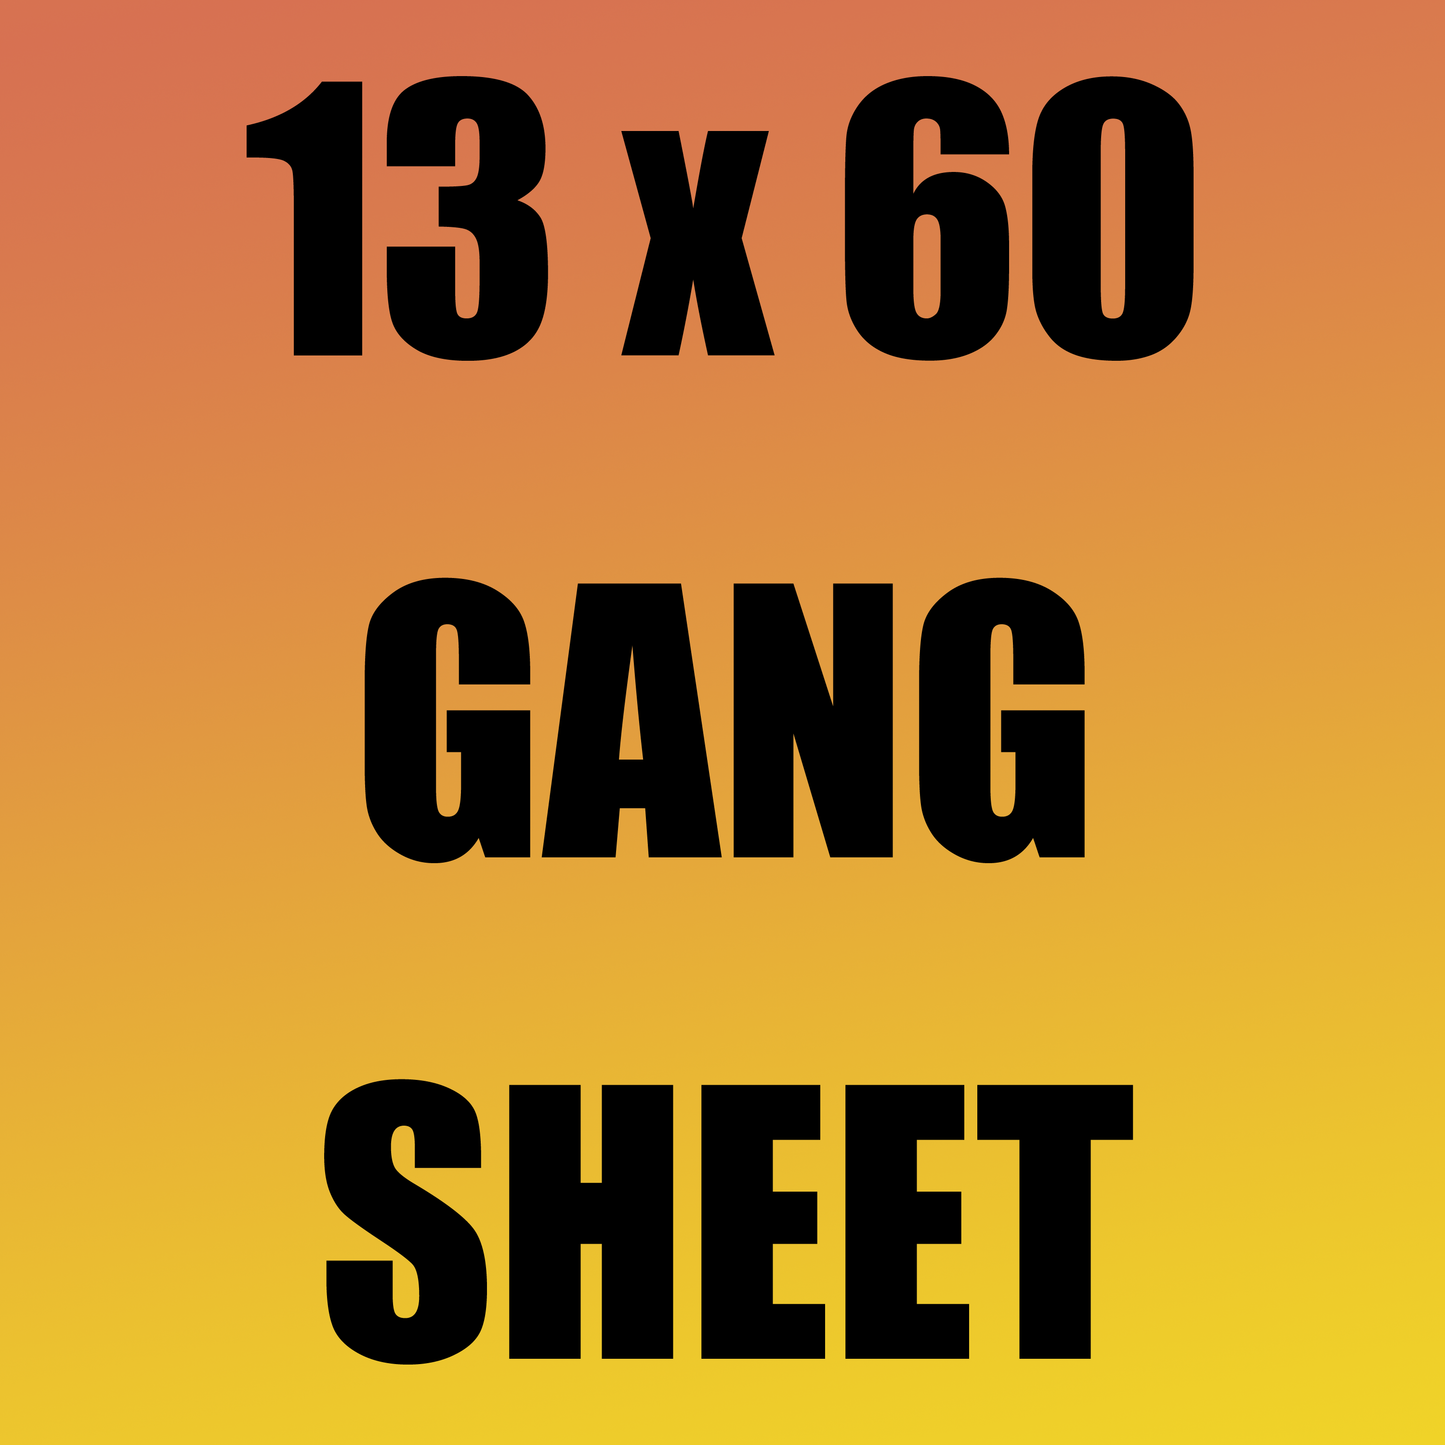 13x60 Gang Sheet